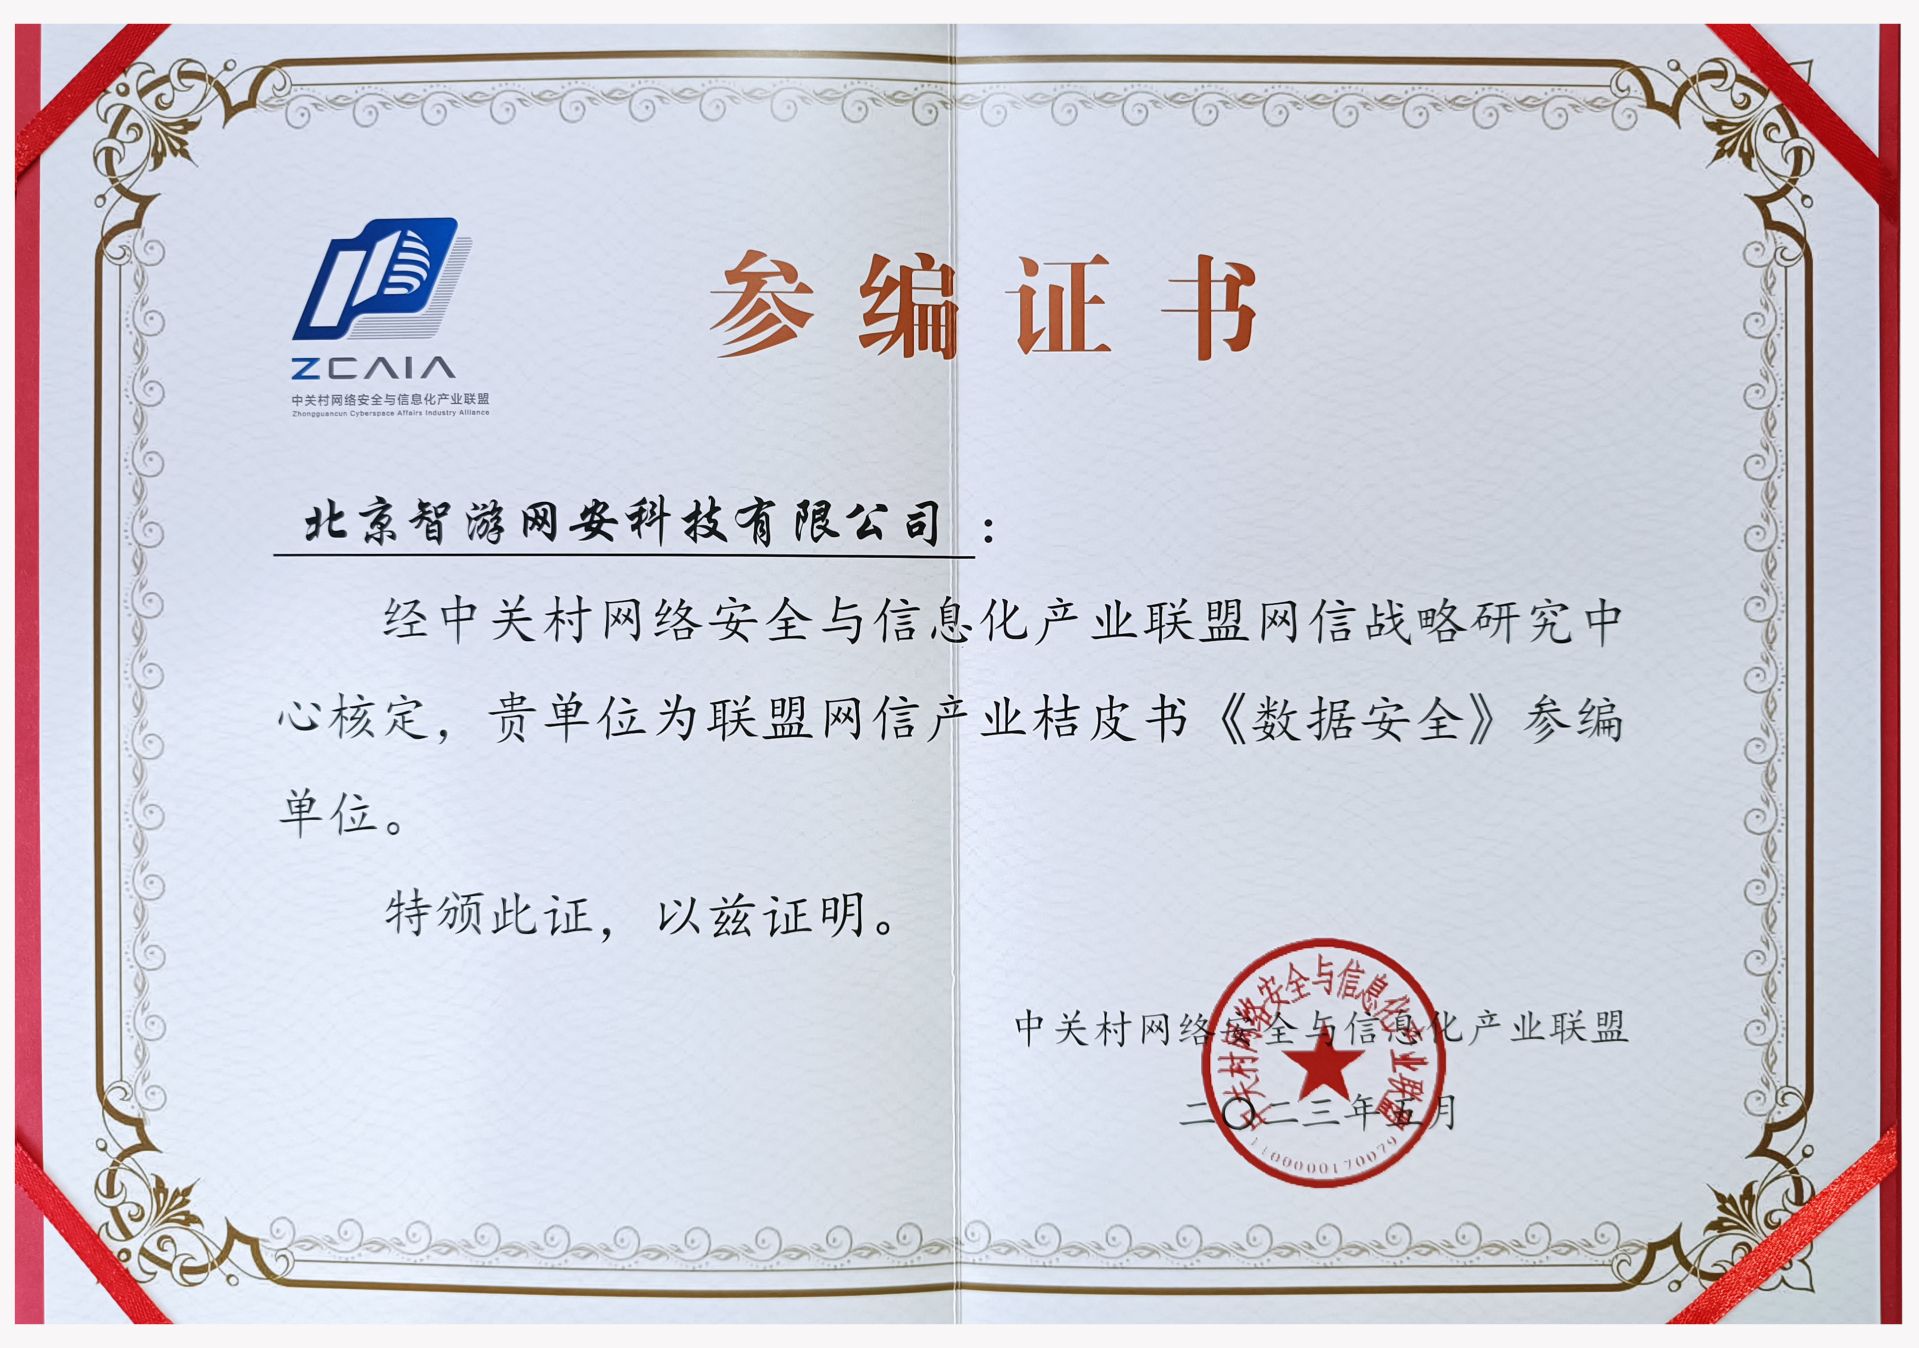 爱加密参编的《中国网信产业桔皮书-数据安全》发布